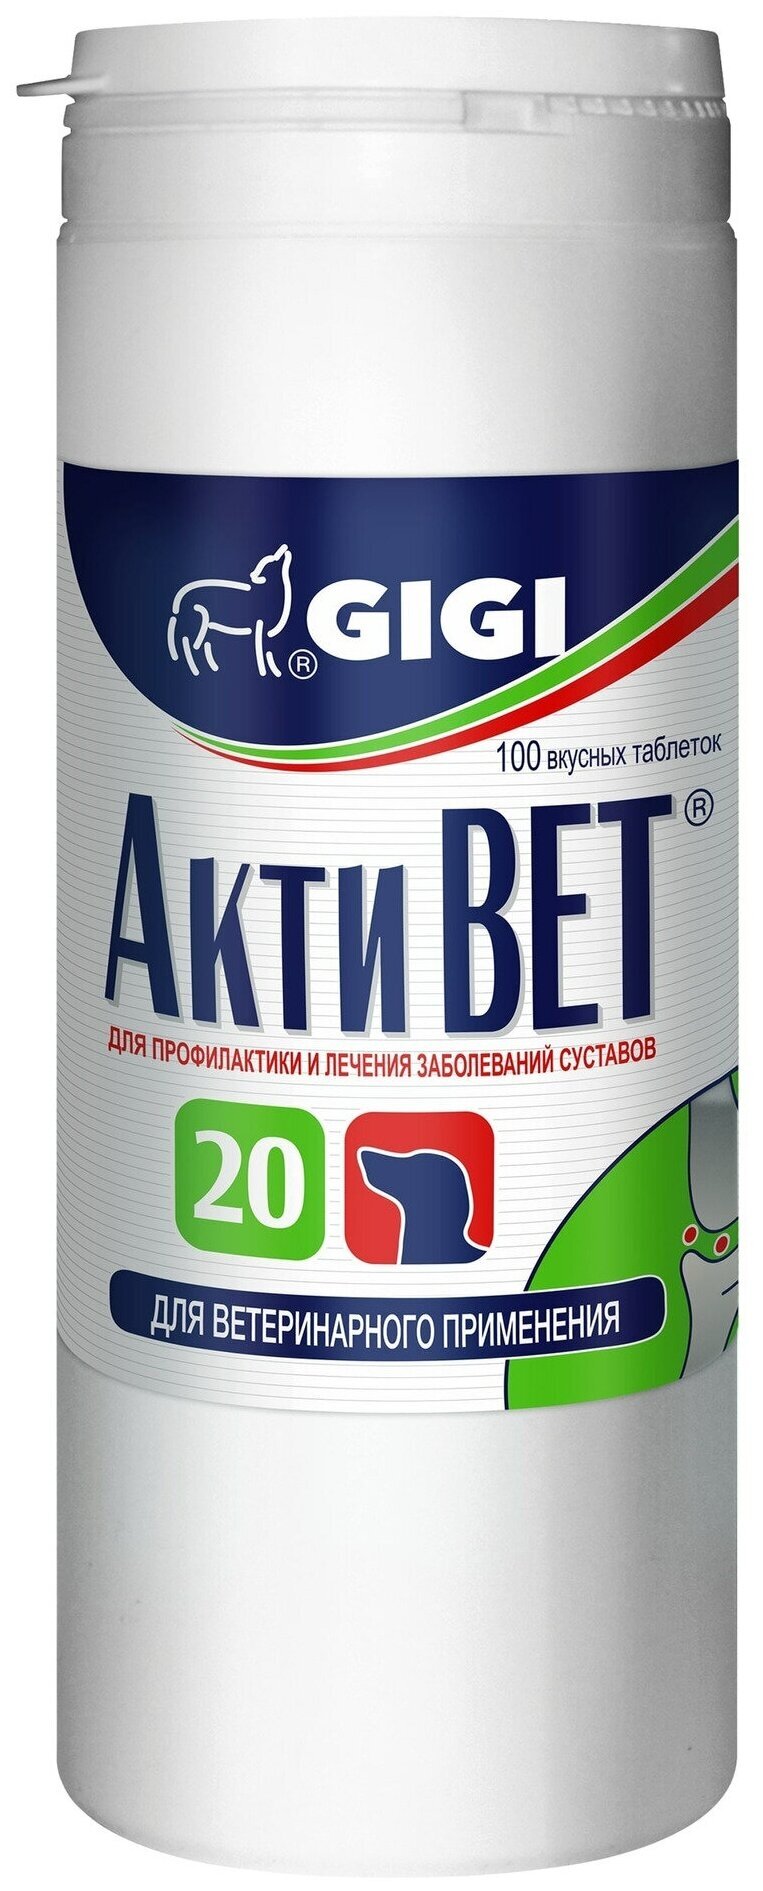 Кормовая добавка GIGI АктиВЕТ 20 для собак крупных пород , 100 таб.